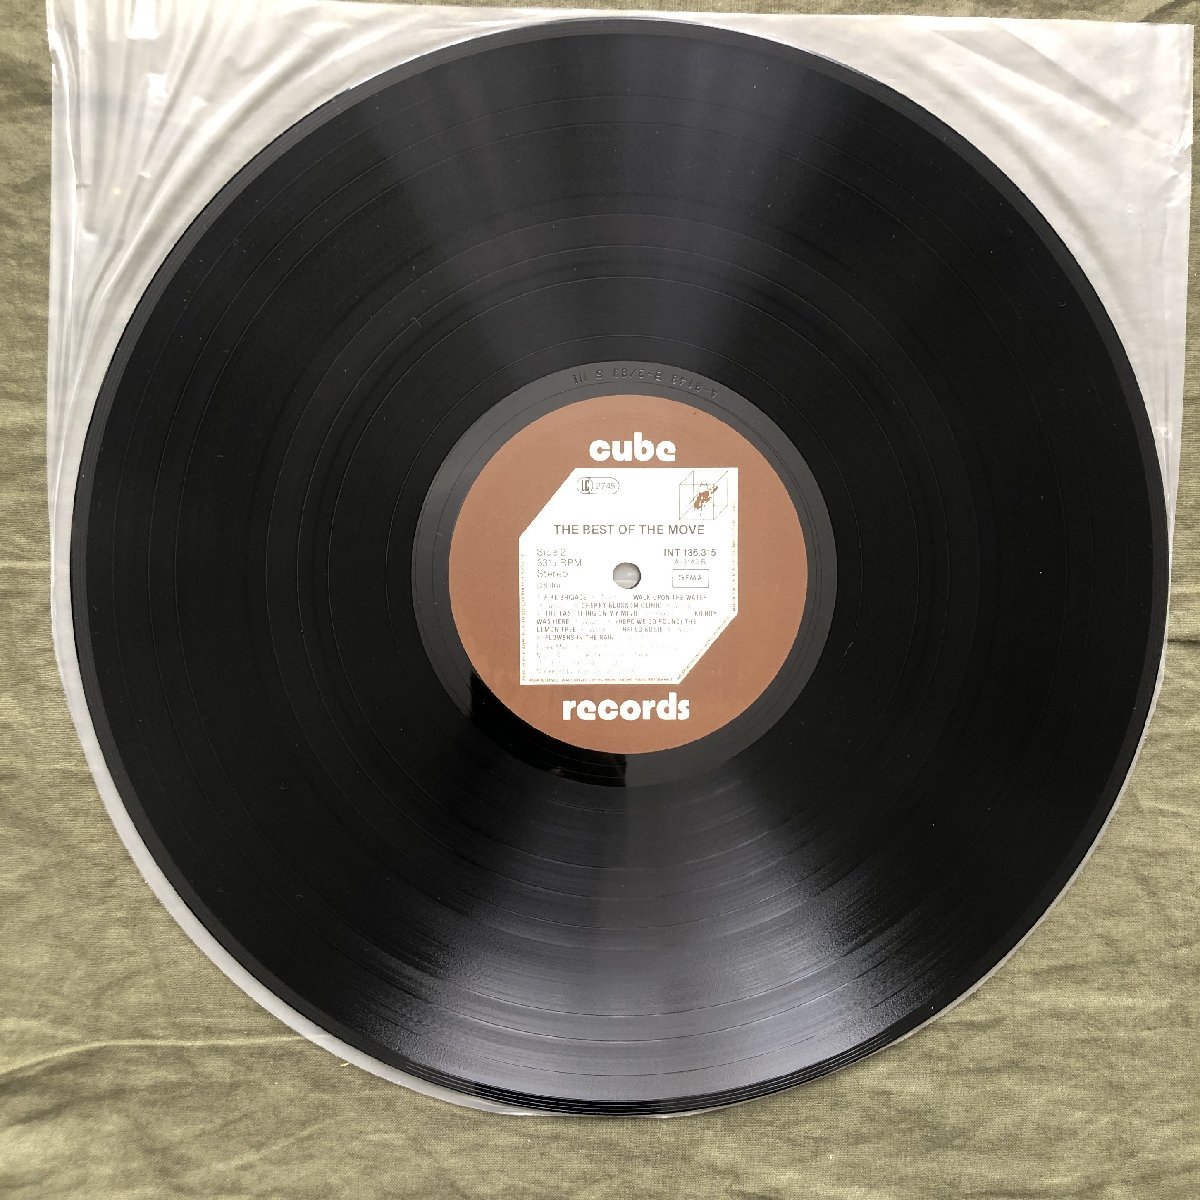 傷なし美盤 良ジャケ 激レア 1976年 ドイツ盤 Move LPレコード The Best Of The Move The Best Of The Move: ELOの前身 Jeff Lynne_画像9